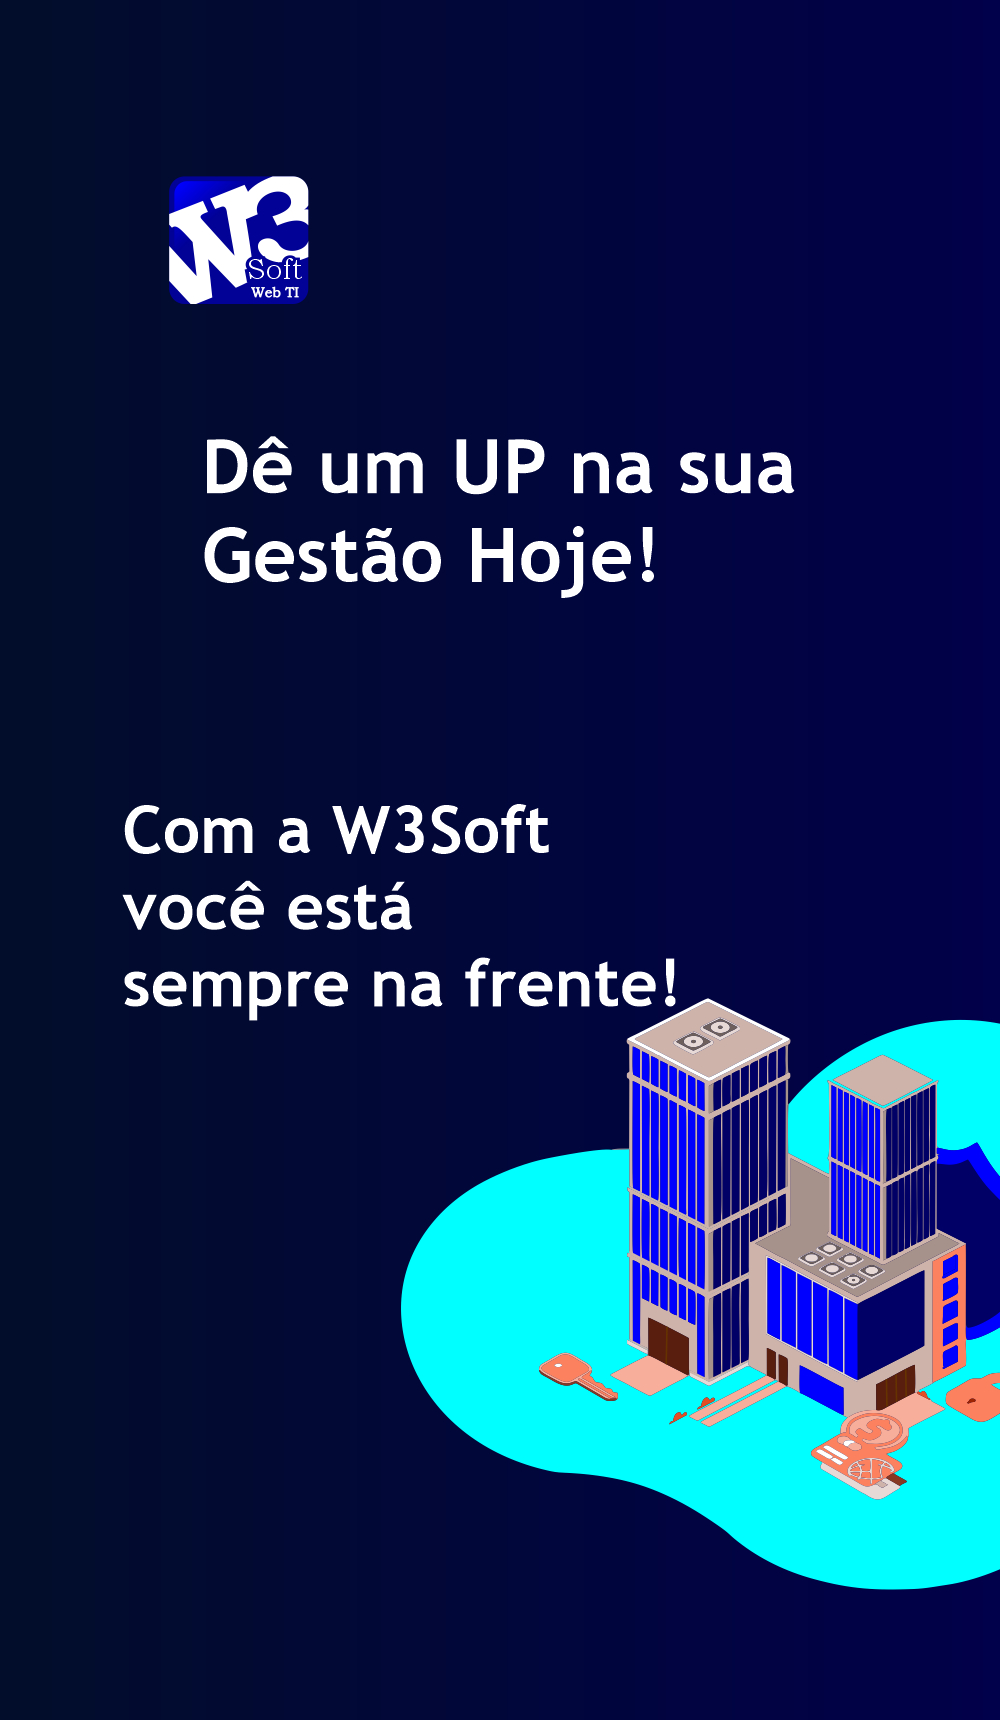 www.w3soft.com.br